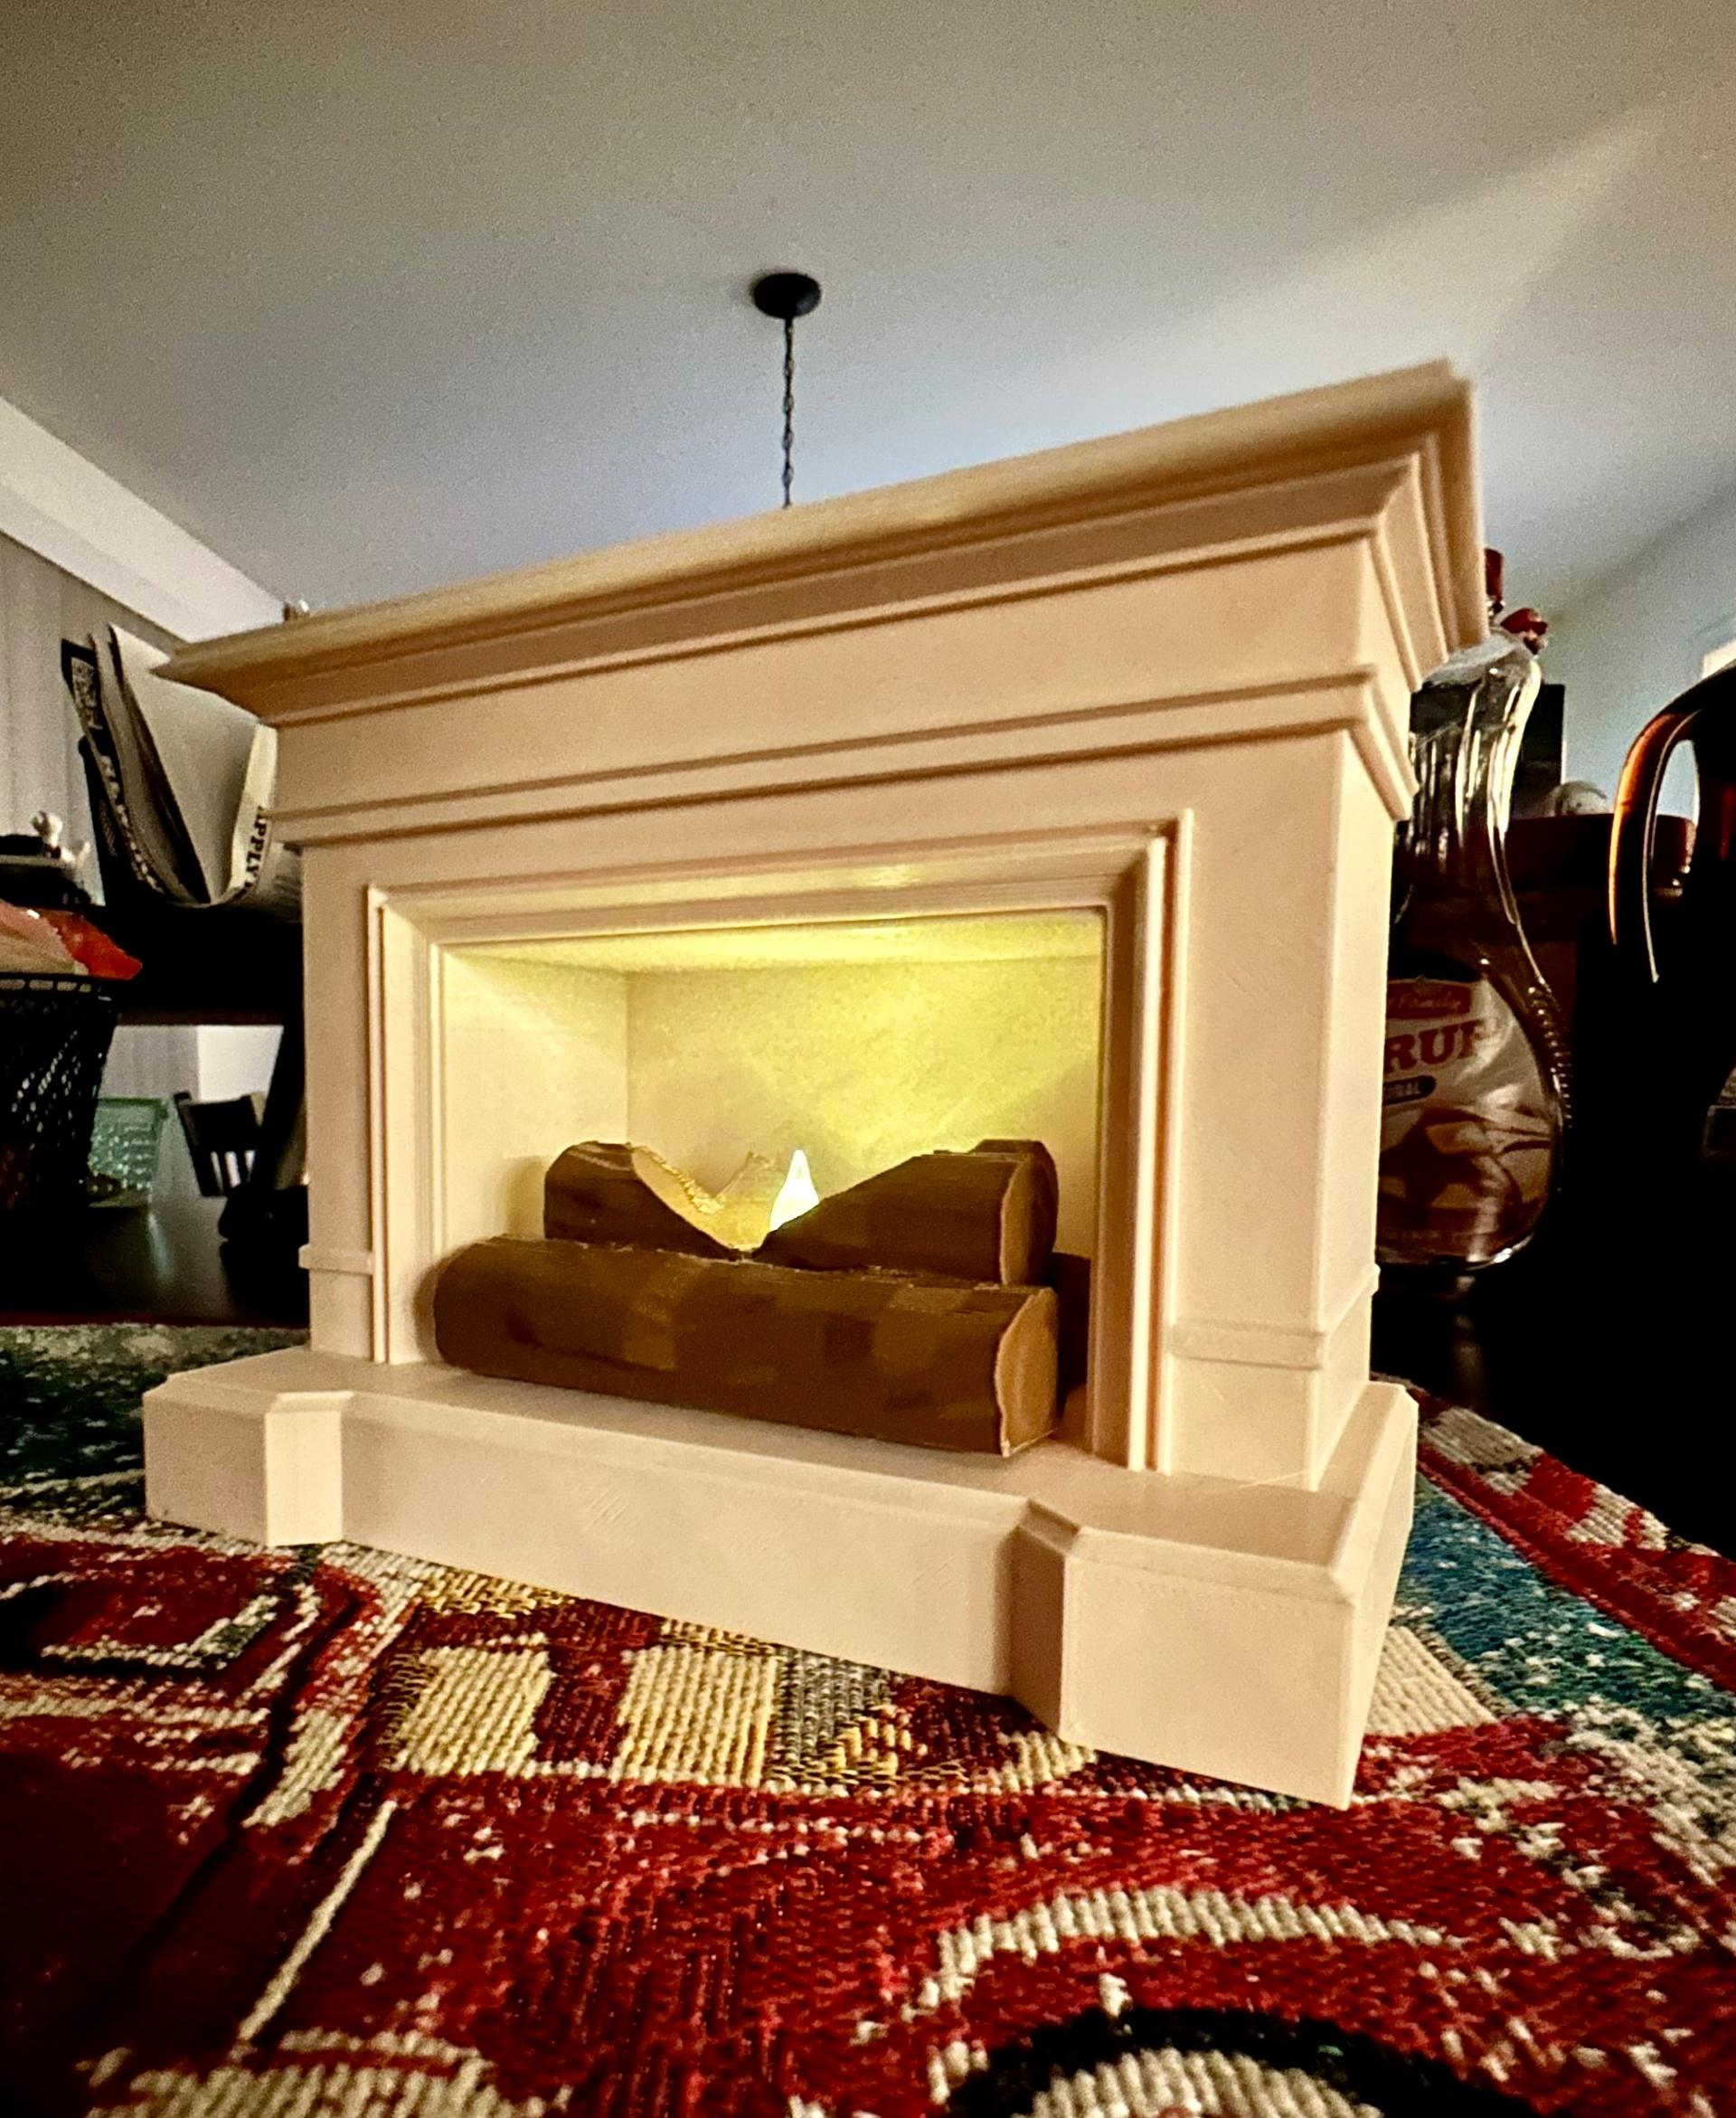 Tea Light Fire Place Mantel - Cute & Homey little fireplace! - 3d model